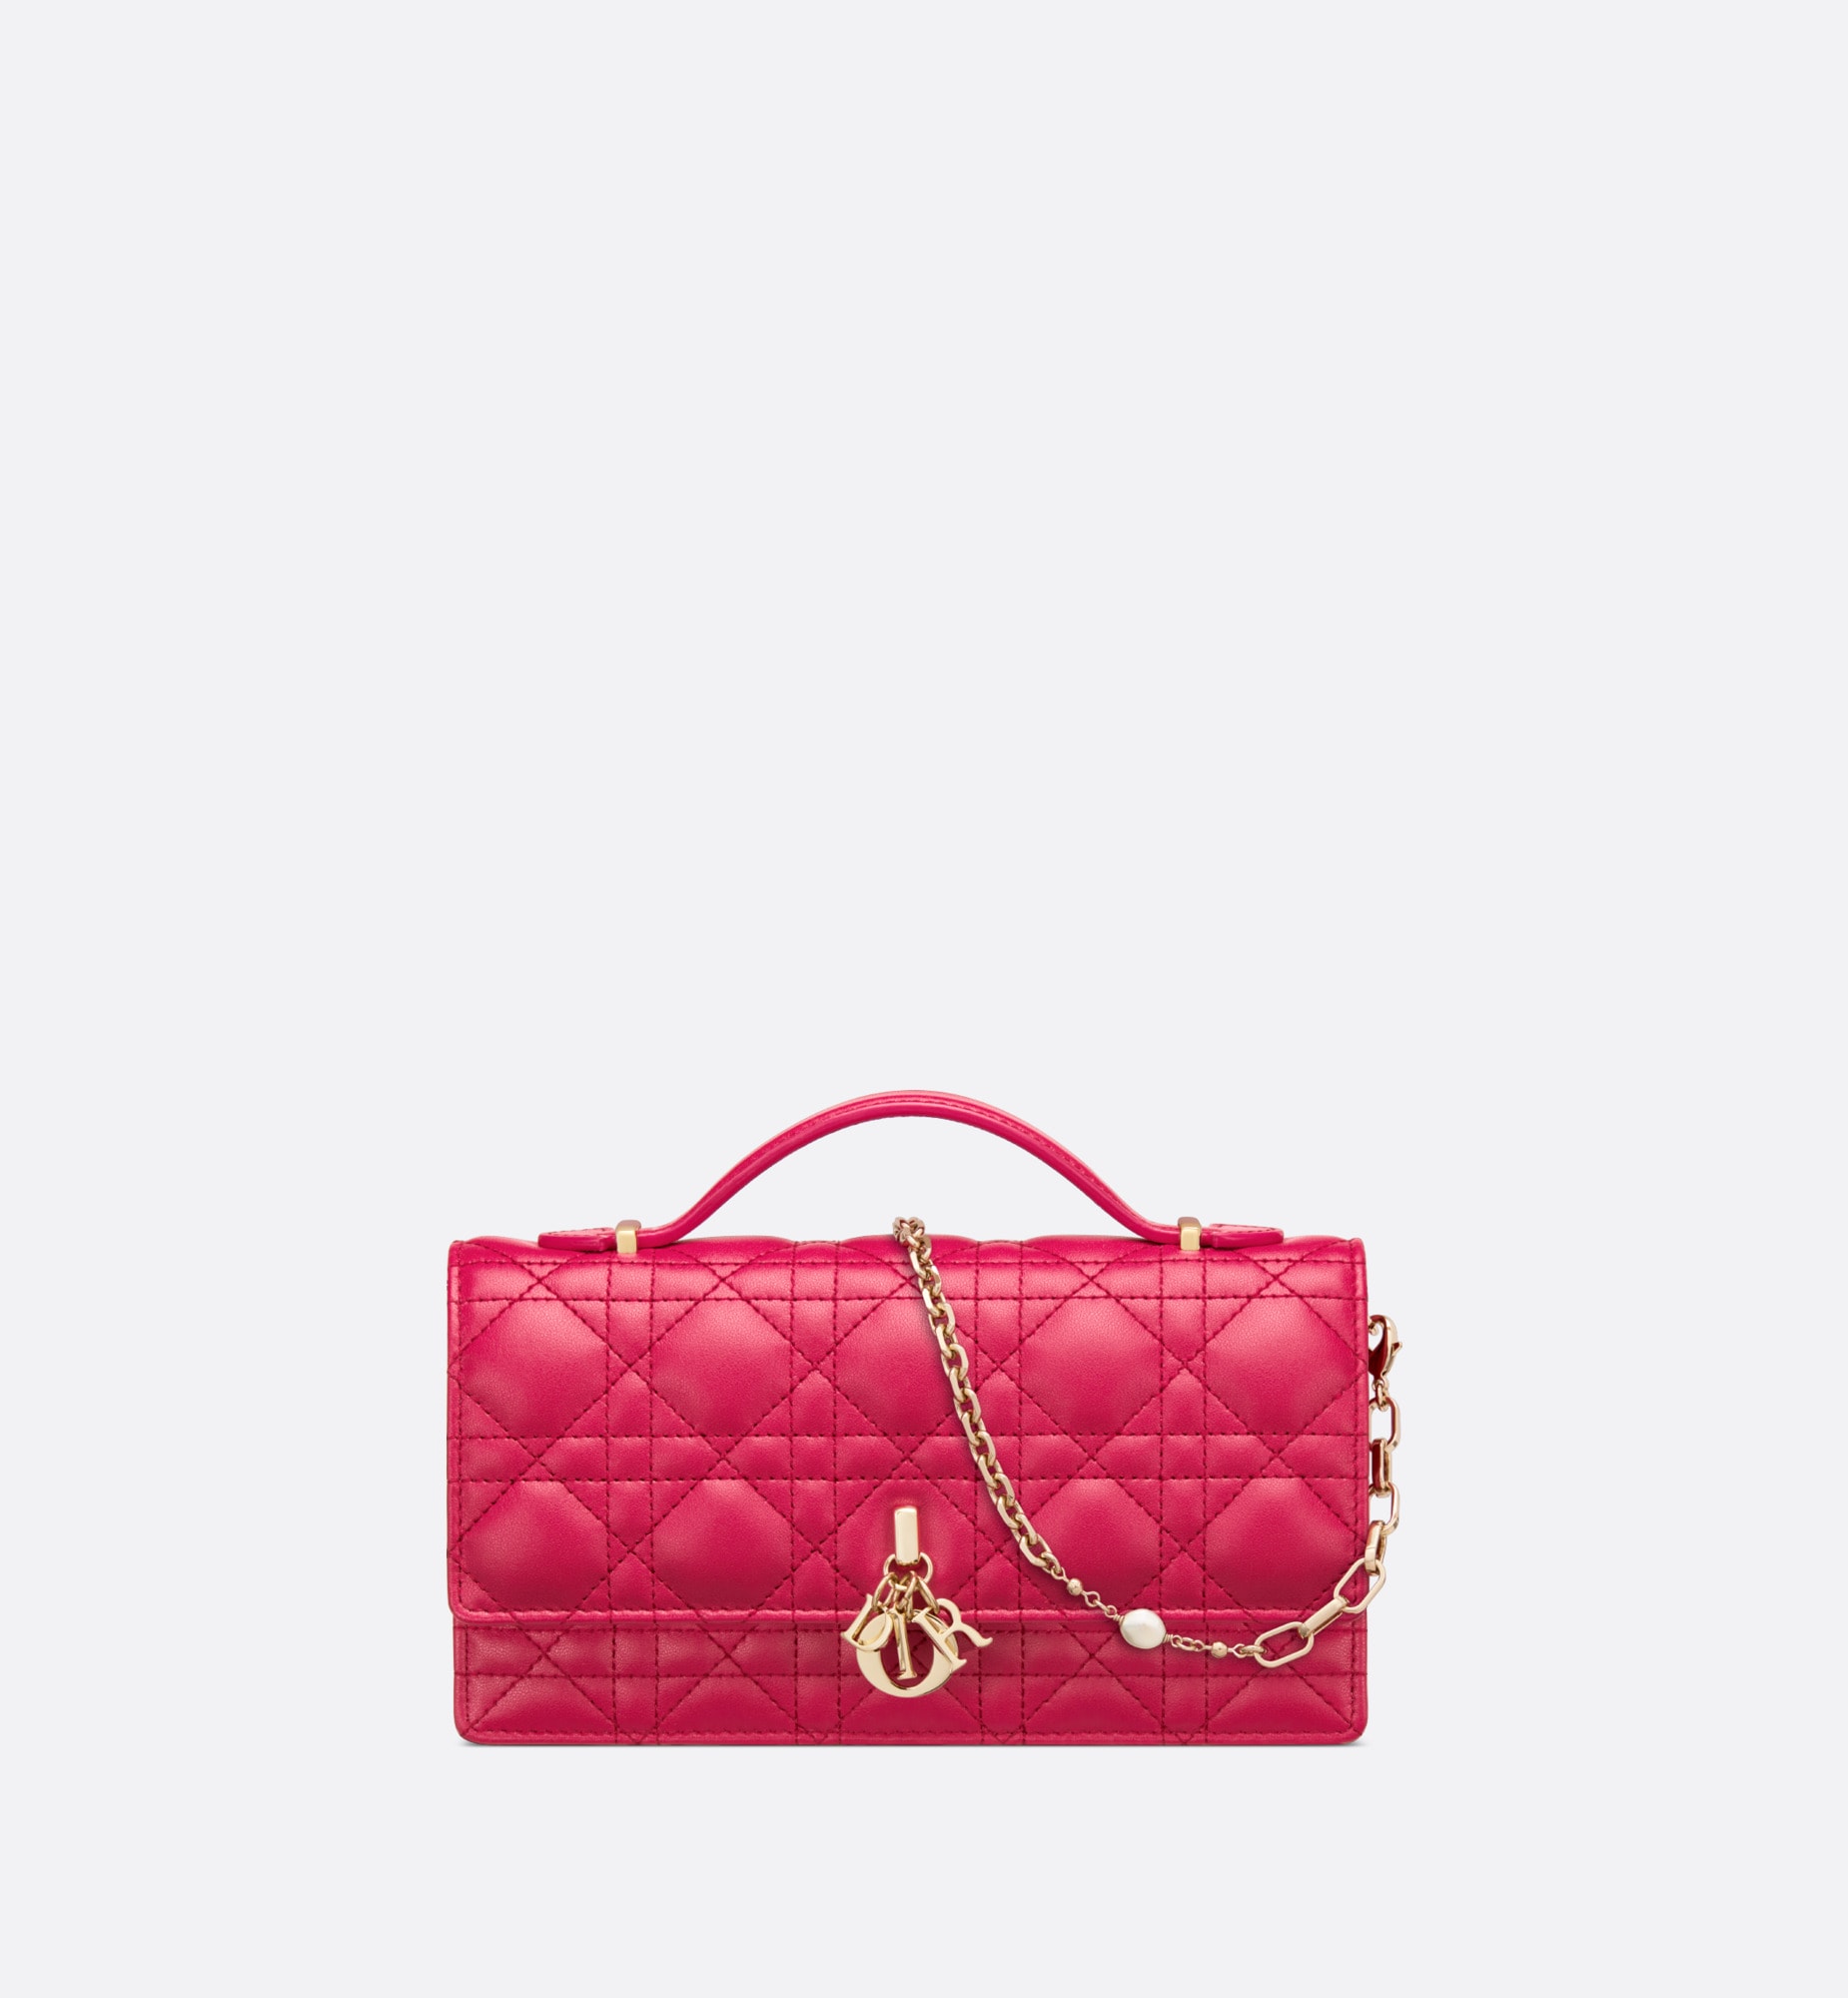 Miss Dior Mini Bag Passion Pink Cannage Lambskin